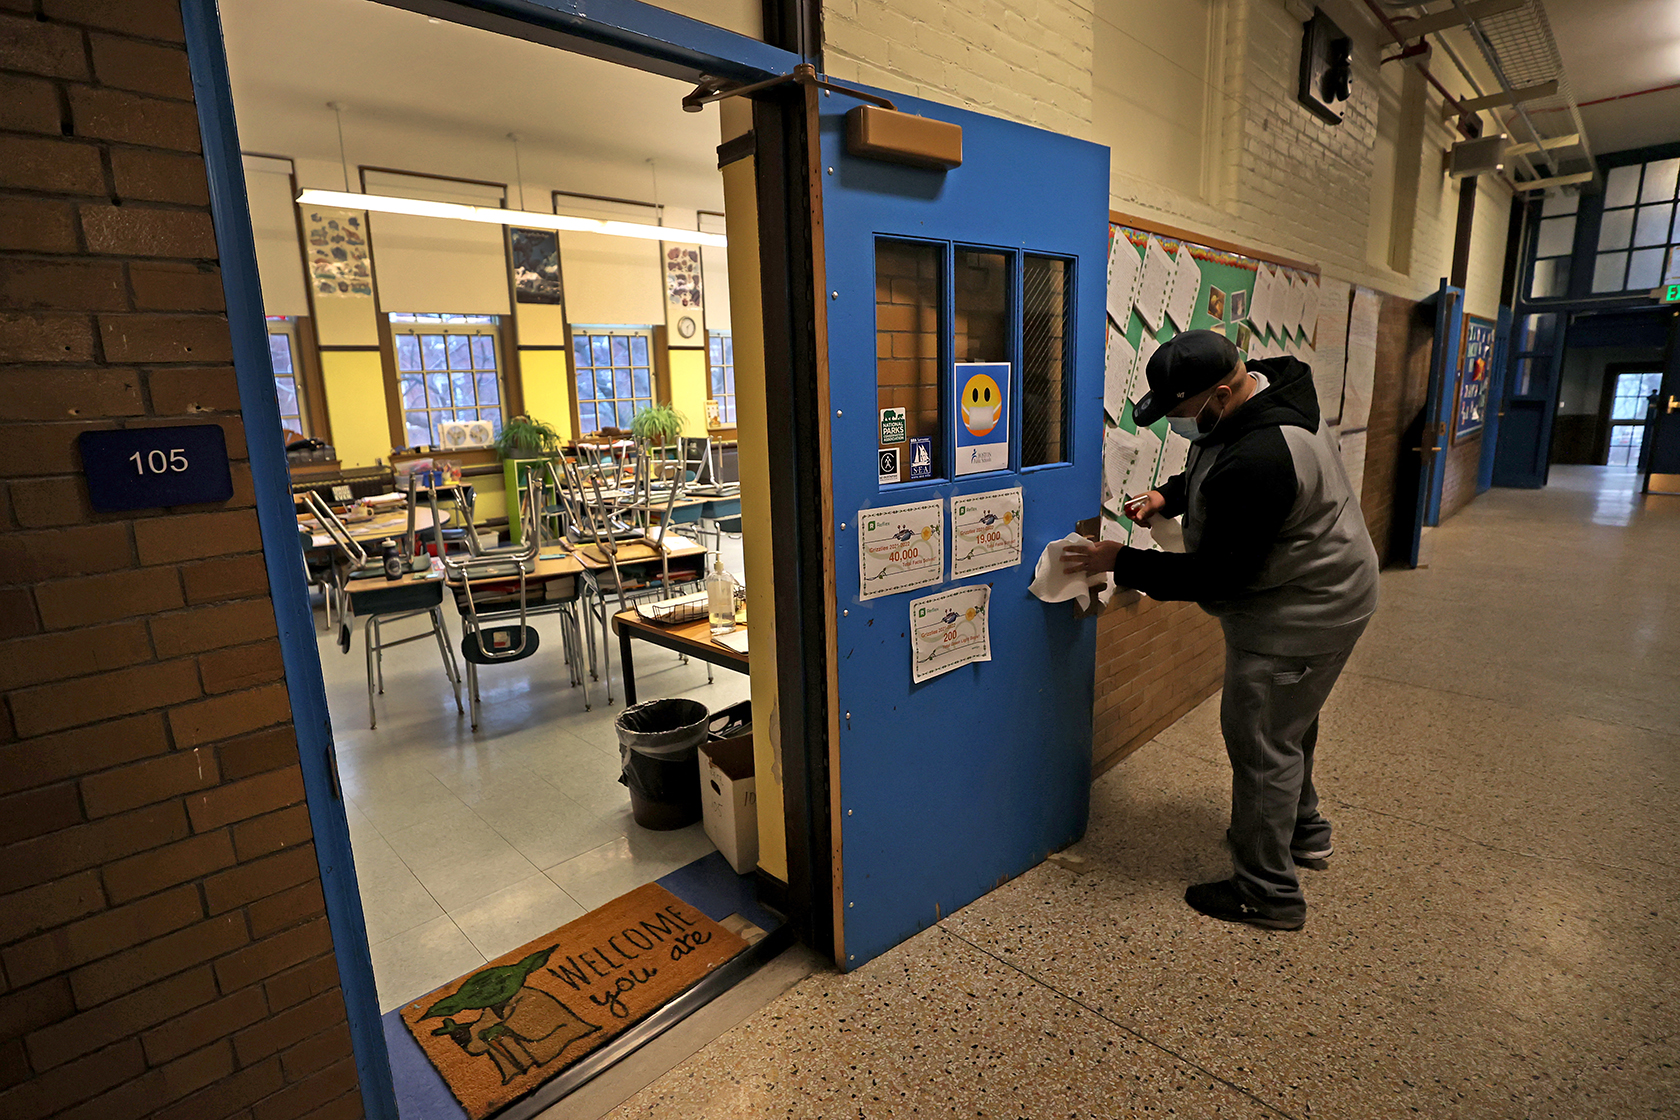 A custodian standing in hallway cleaning classroom doorknob